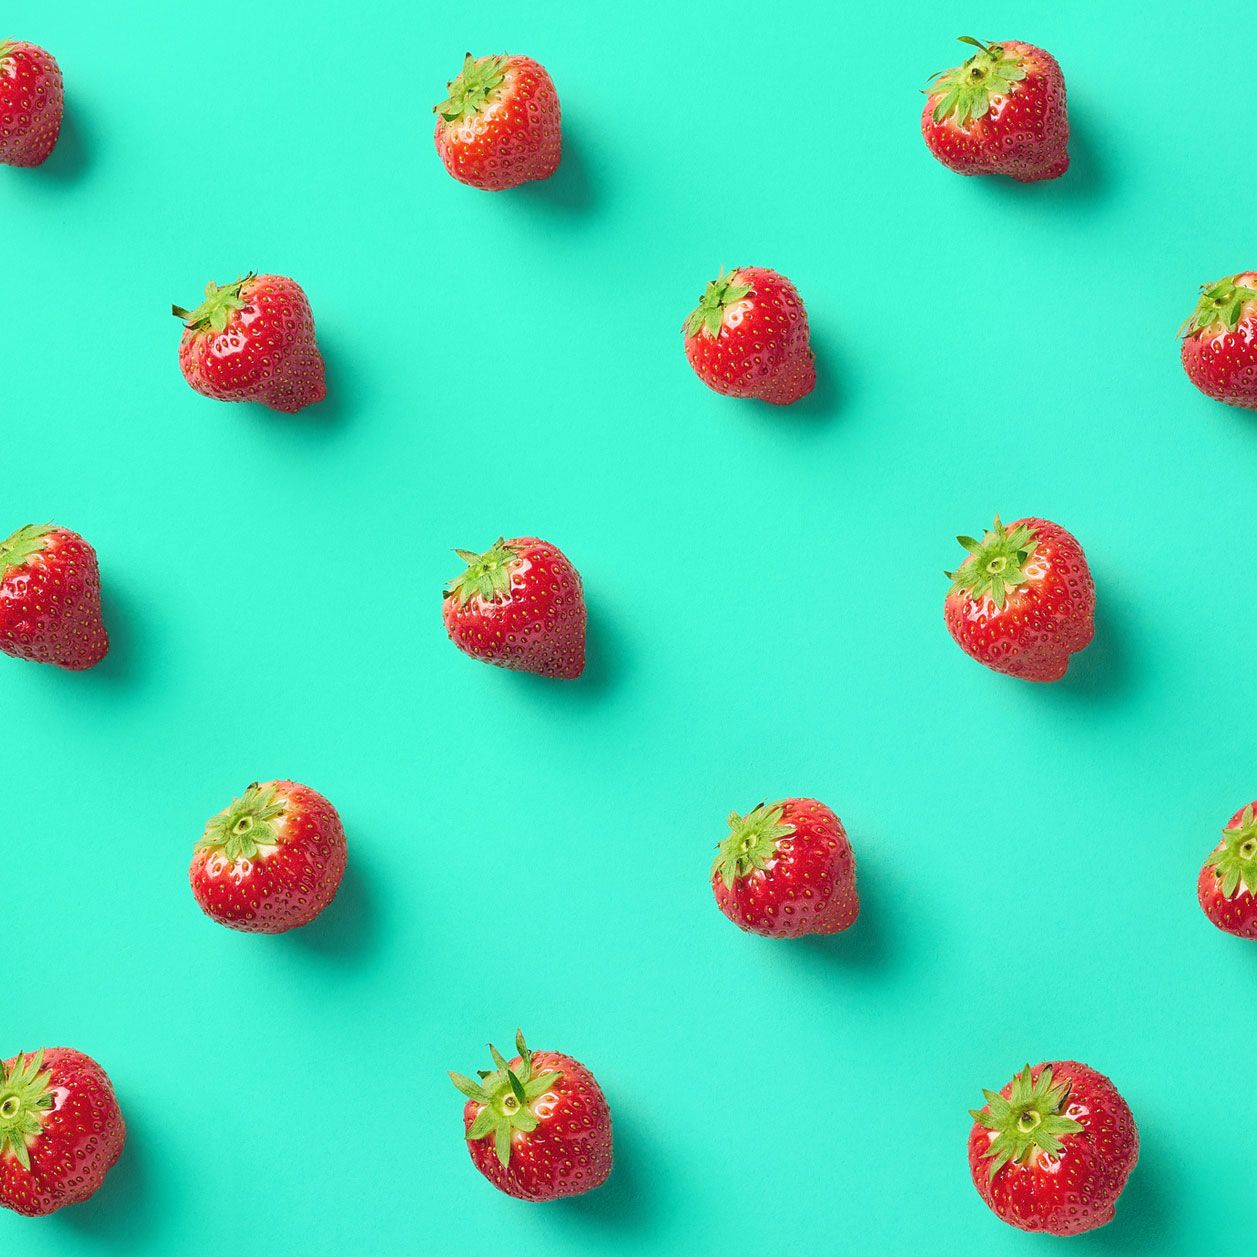 Kalorientabelle Obst: Beerenfrüchte wie Erdbeeren